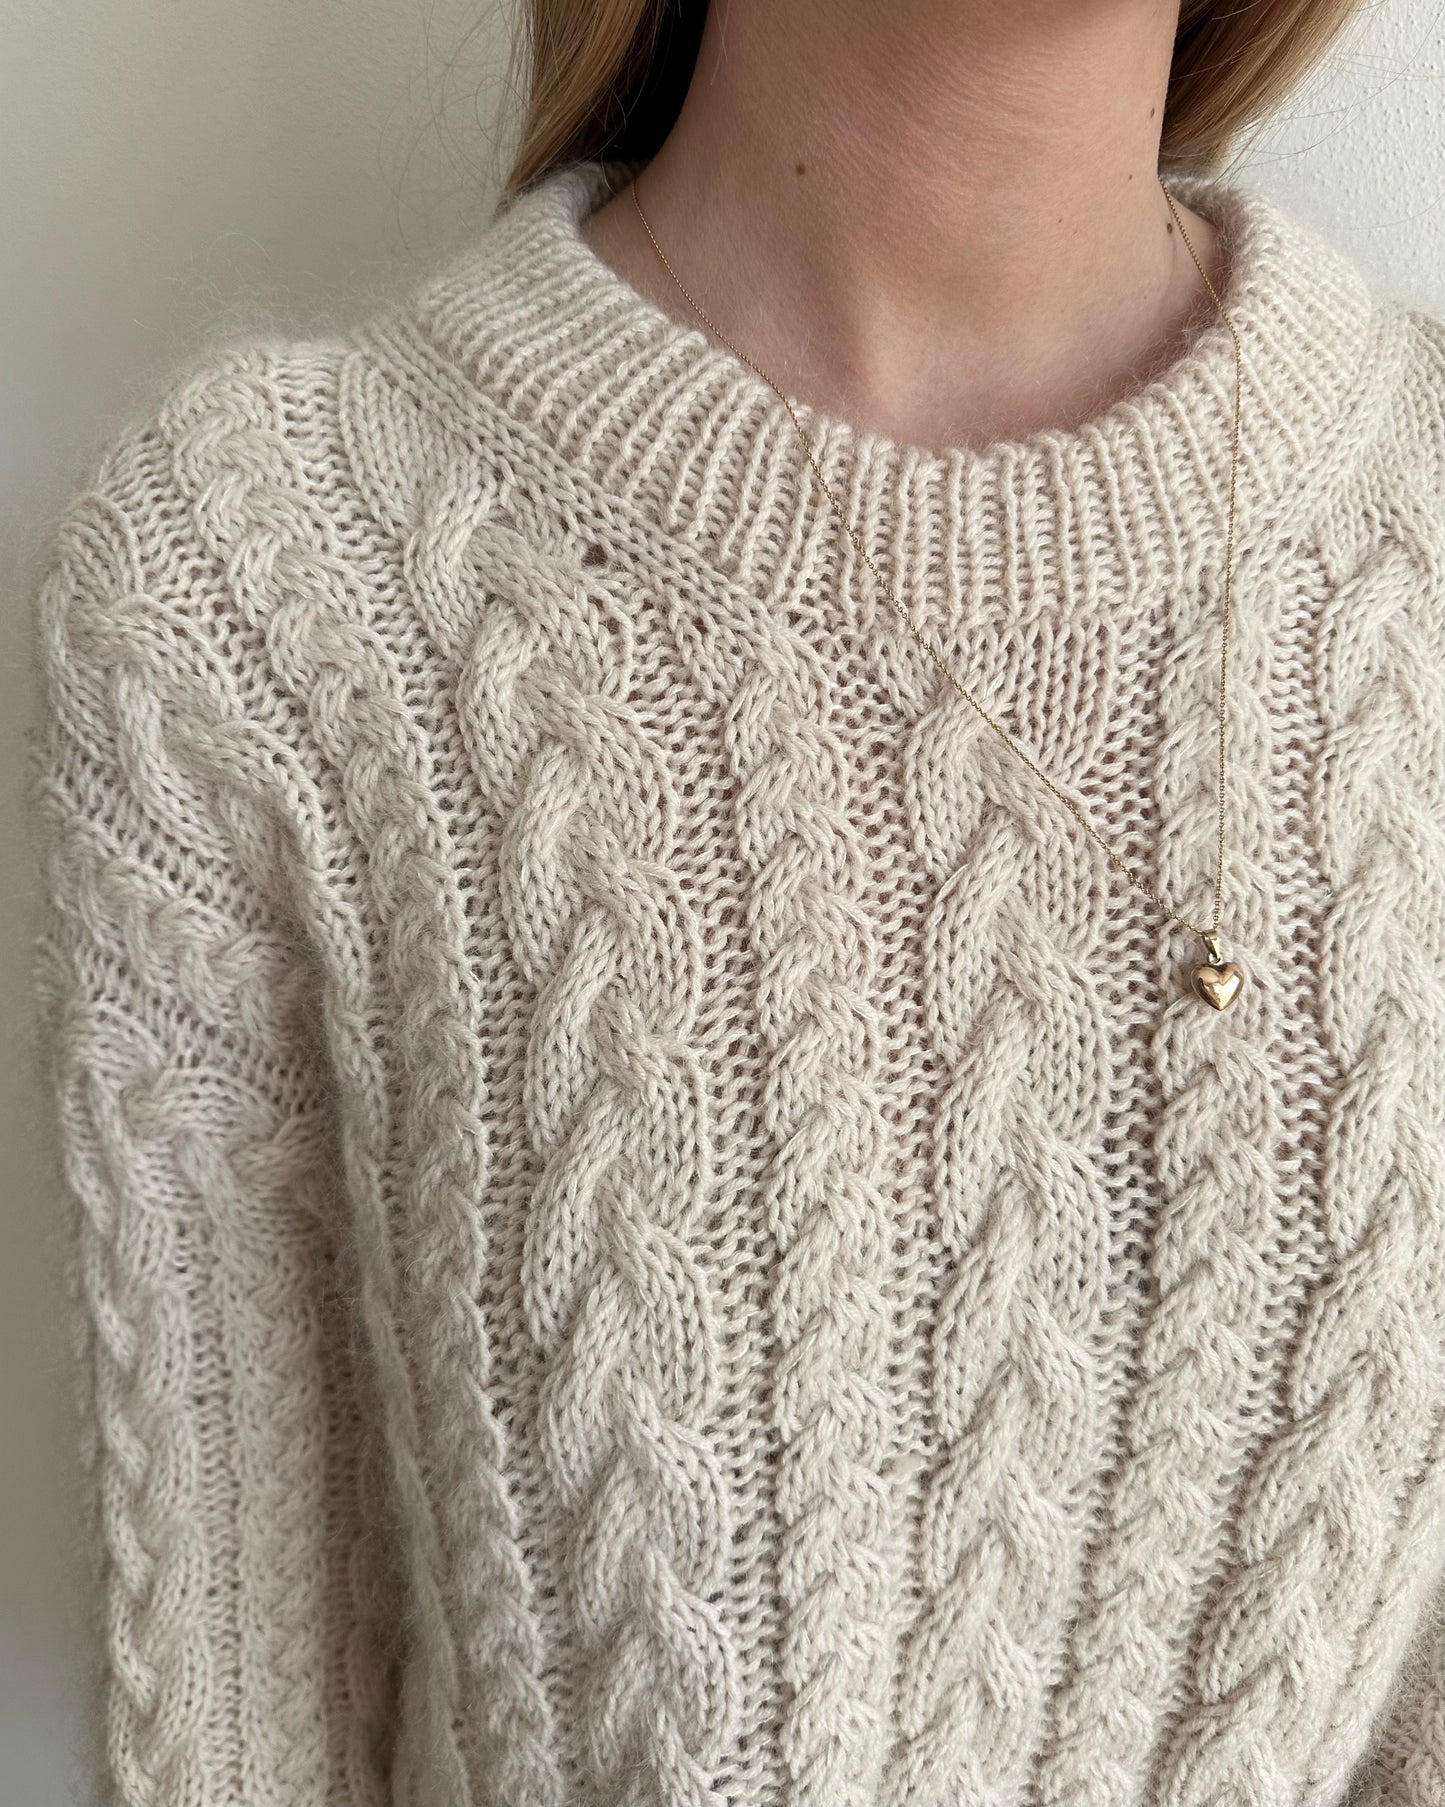 Pachira Sweater - Dansk